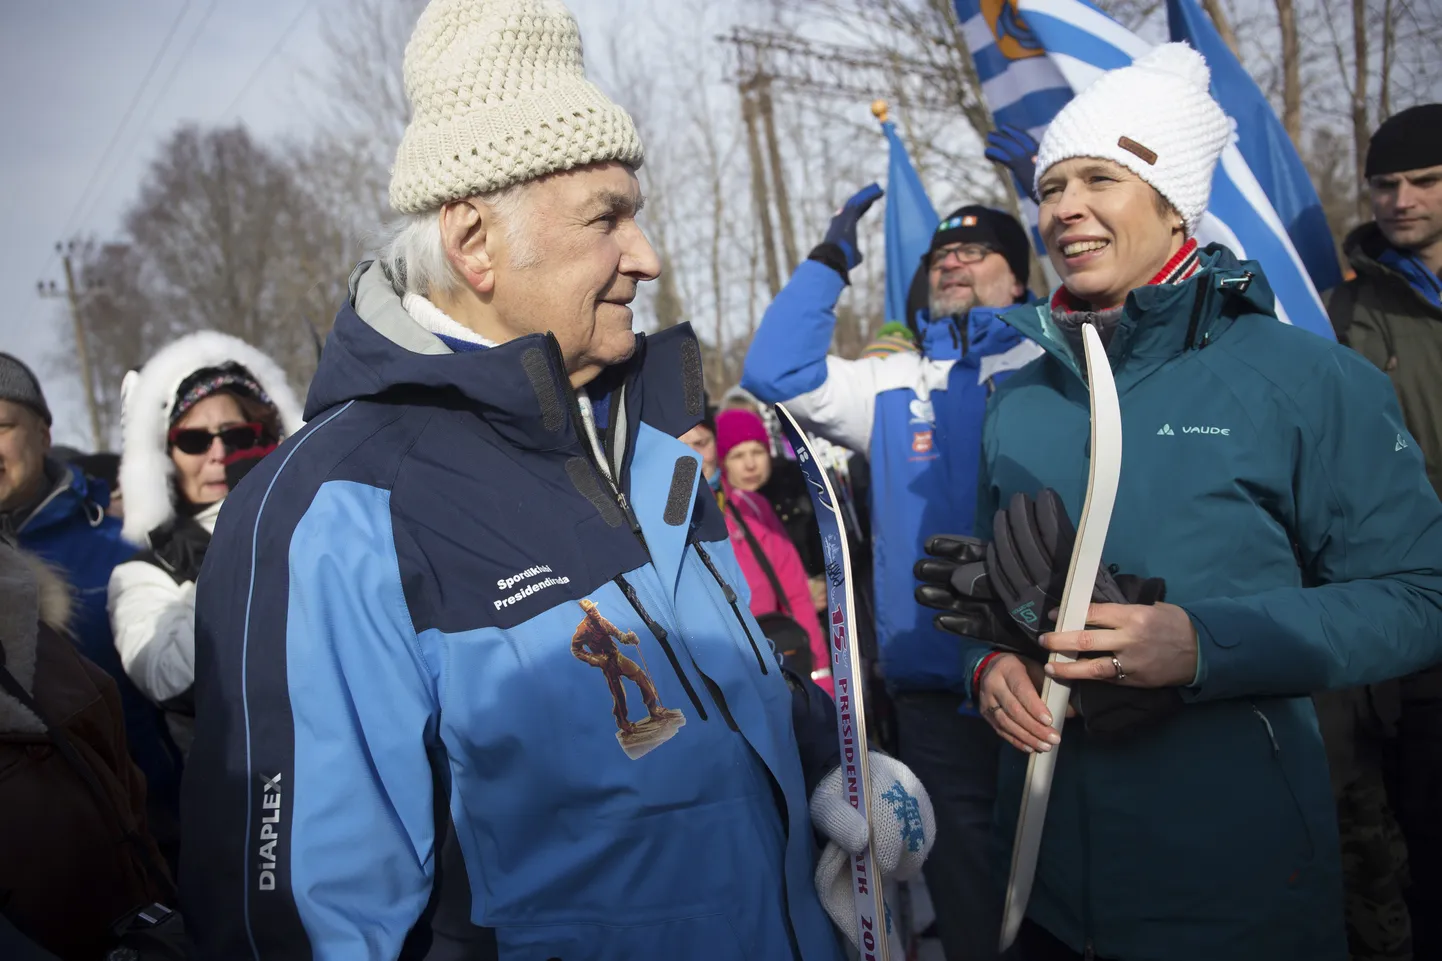 Presidendid Kersti Kaljulaid ning  Arnold Rüütel allkirjastasid presidendimatka suusad.  Sellega andis Arnold Rüütel  patroonluse üle Kersti Kaljulaidile.